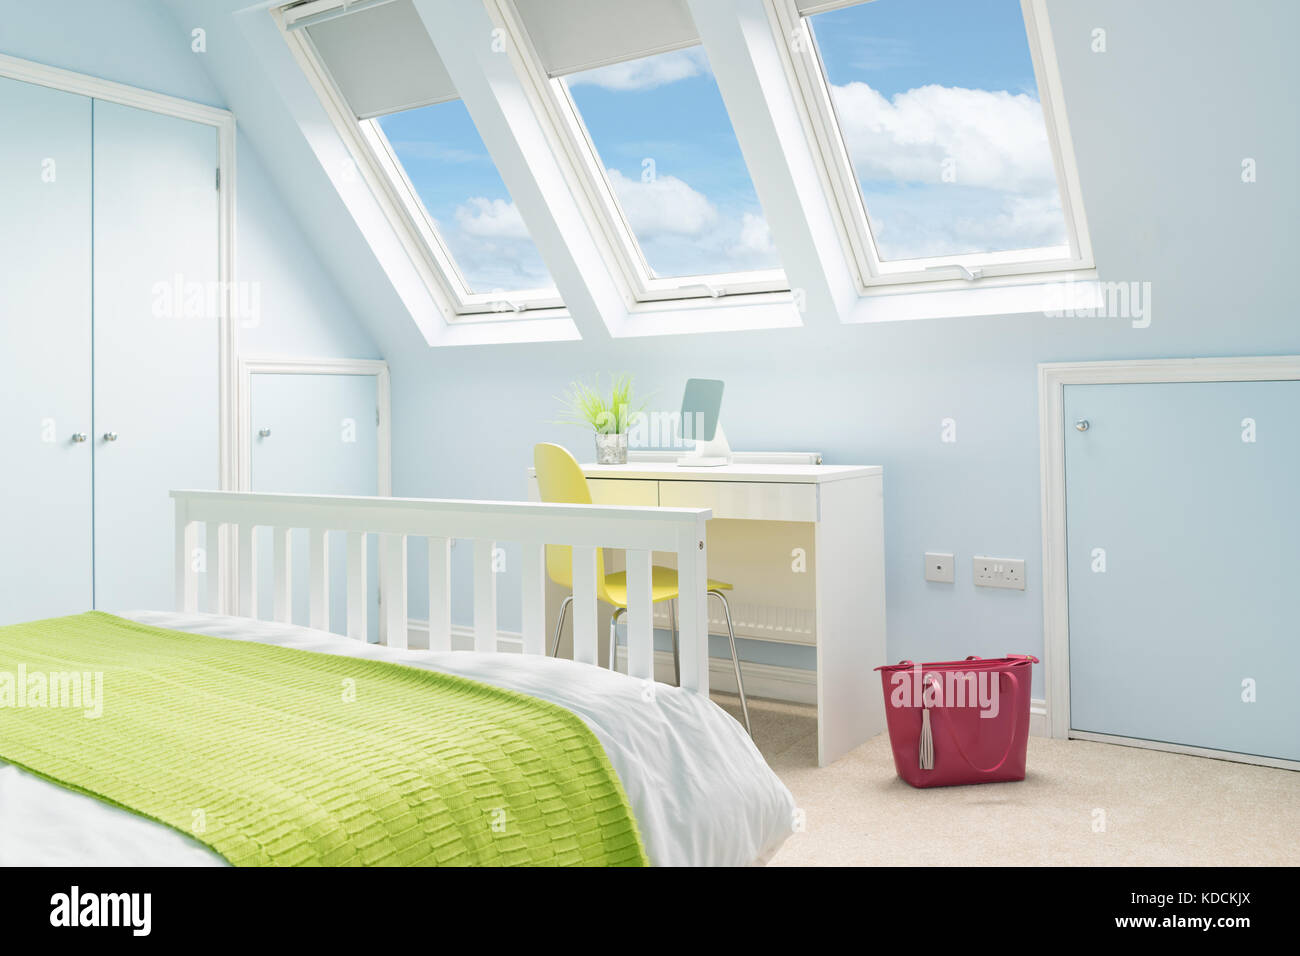 Frais et lumineux, une chambre à coucher dans une conversion loft avec un lit double, d''un mobilier moderne et velux rooflight windows. Banque D'Images